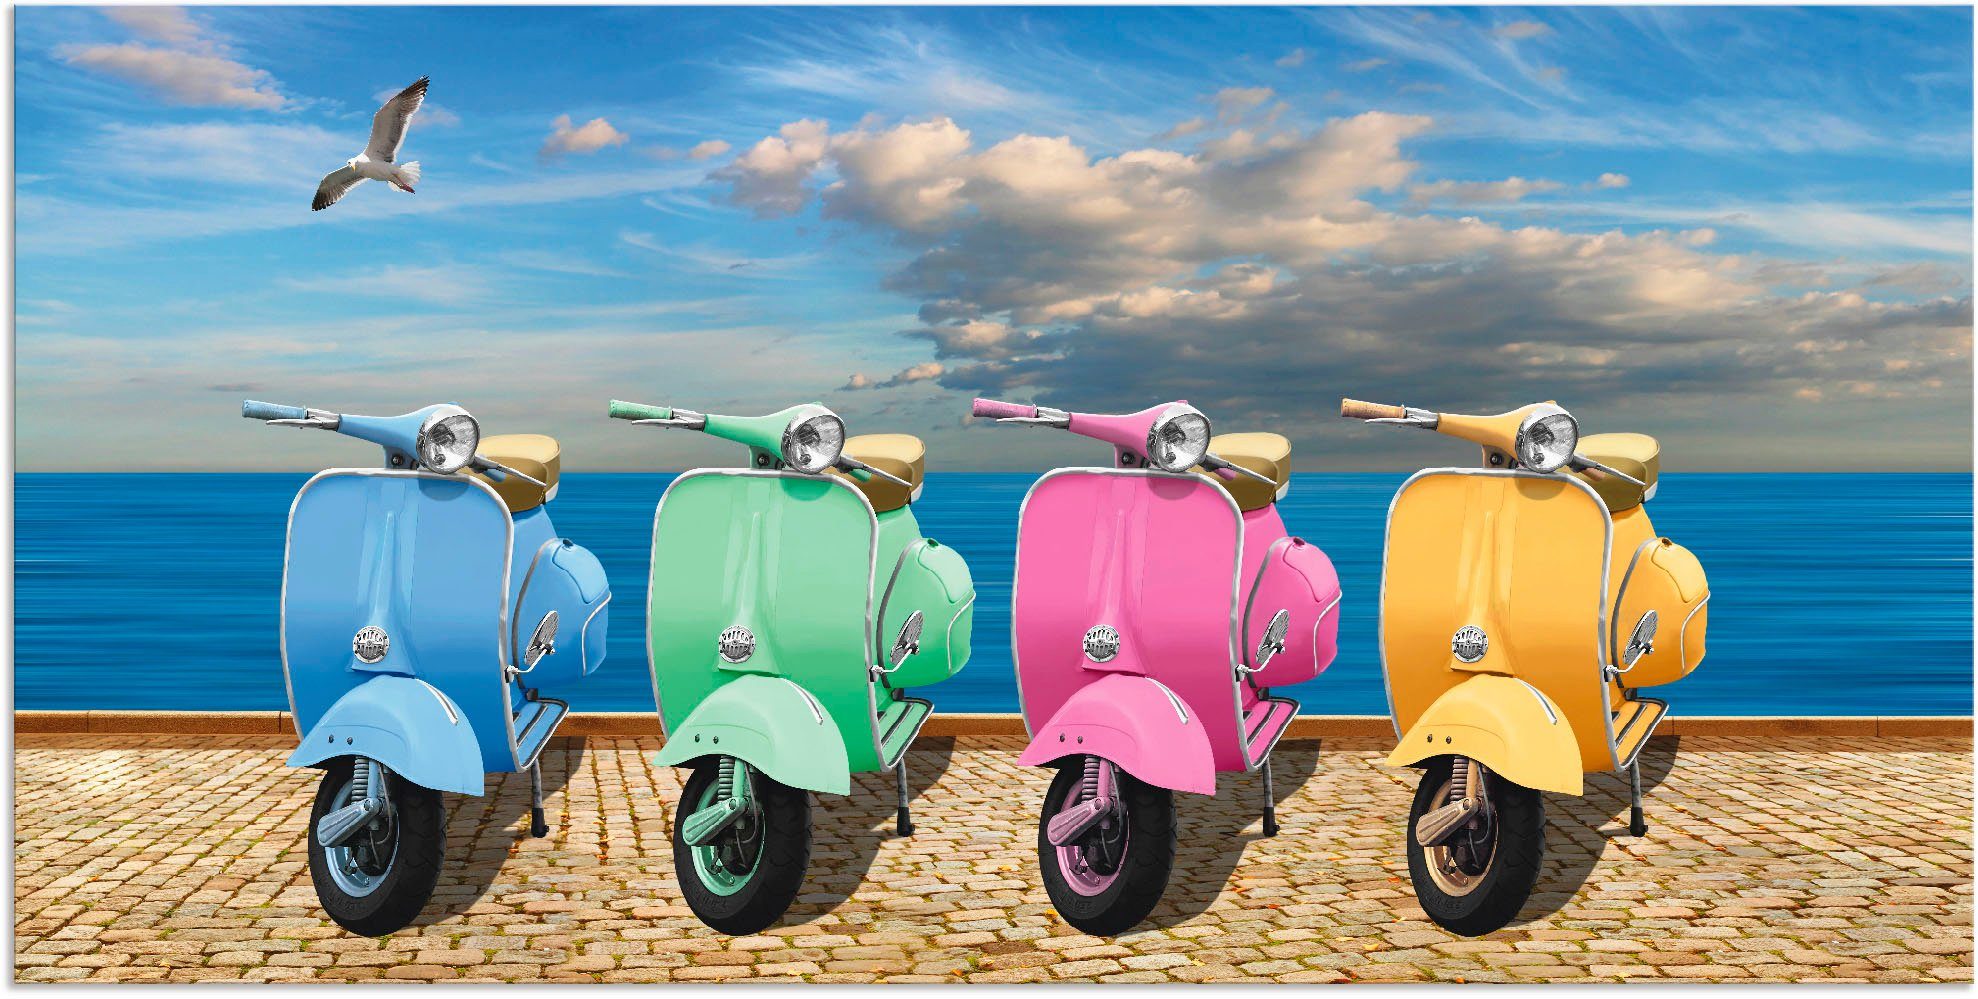 Artland Artprint Vespa-scooter in bonte kleuren in vele afmetingen & productsoorten - artprint van aluminium / artprint voor buiten, artprint op linnen, poster, muursticker / wandf